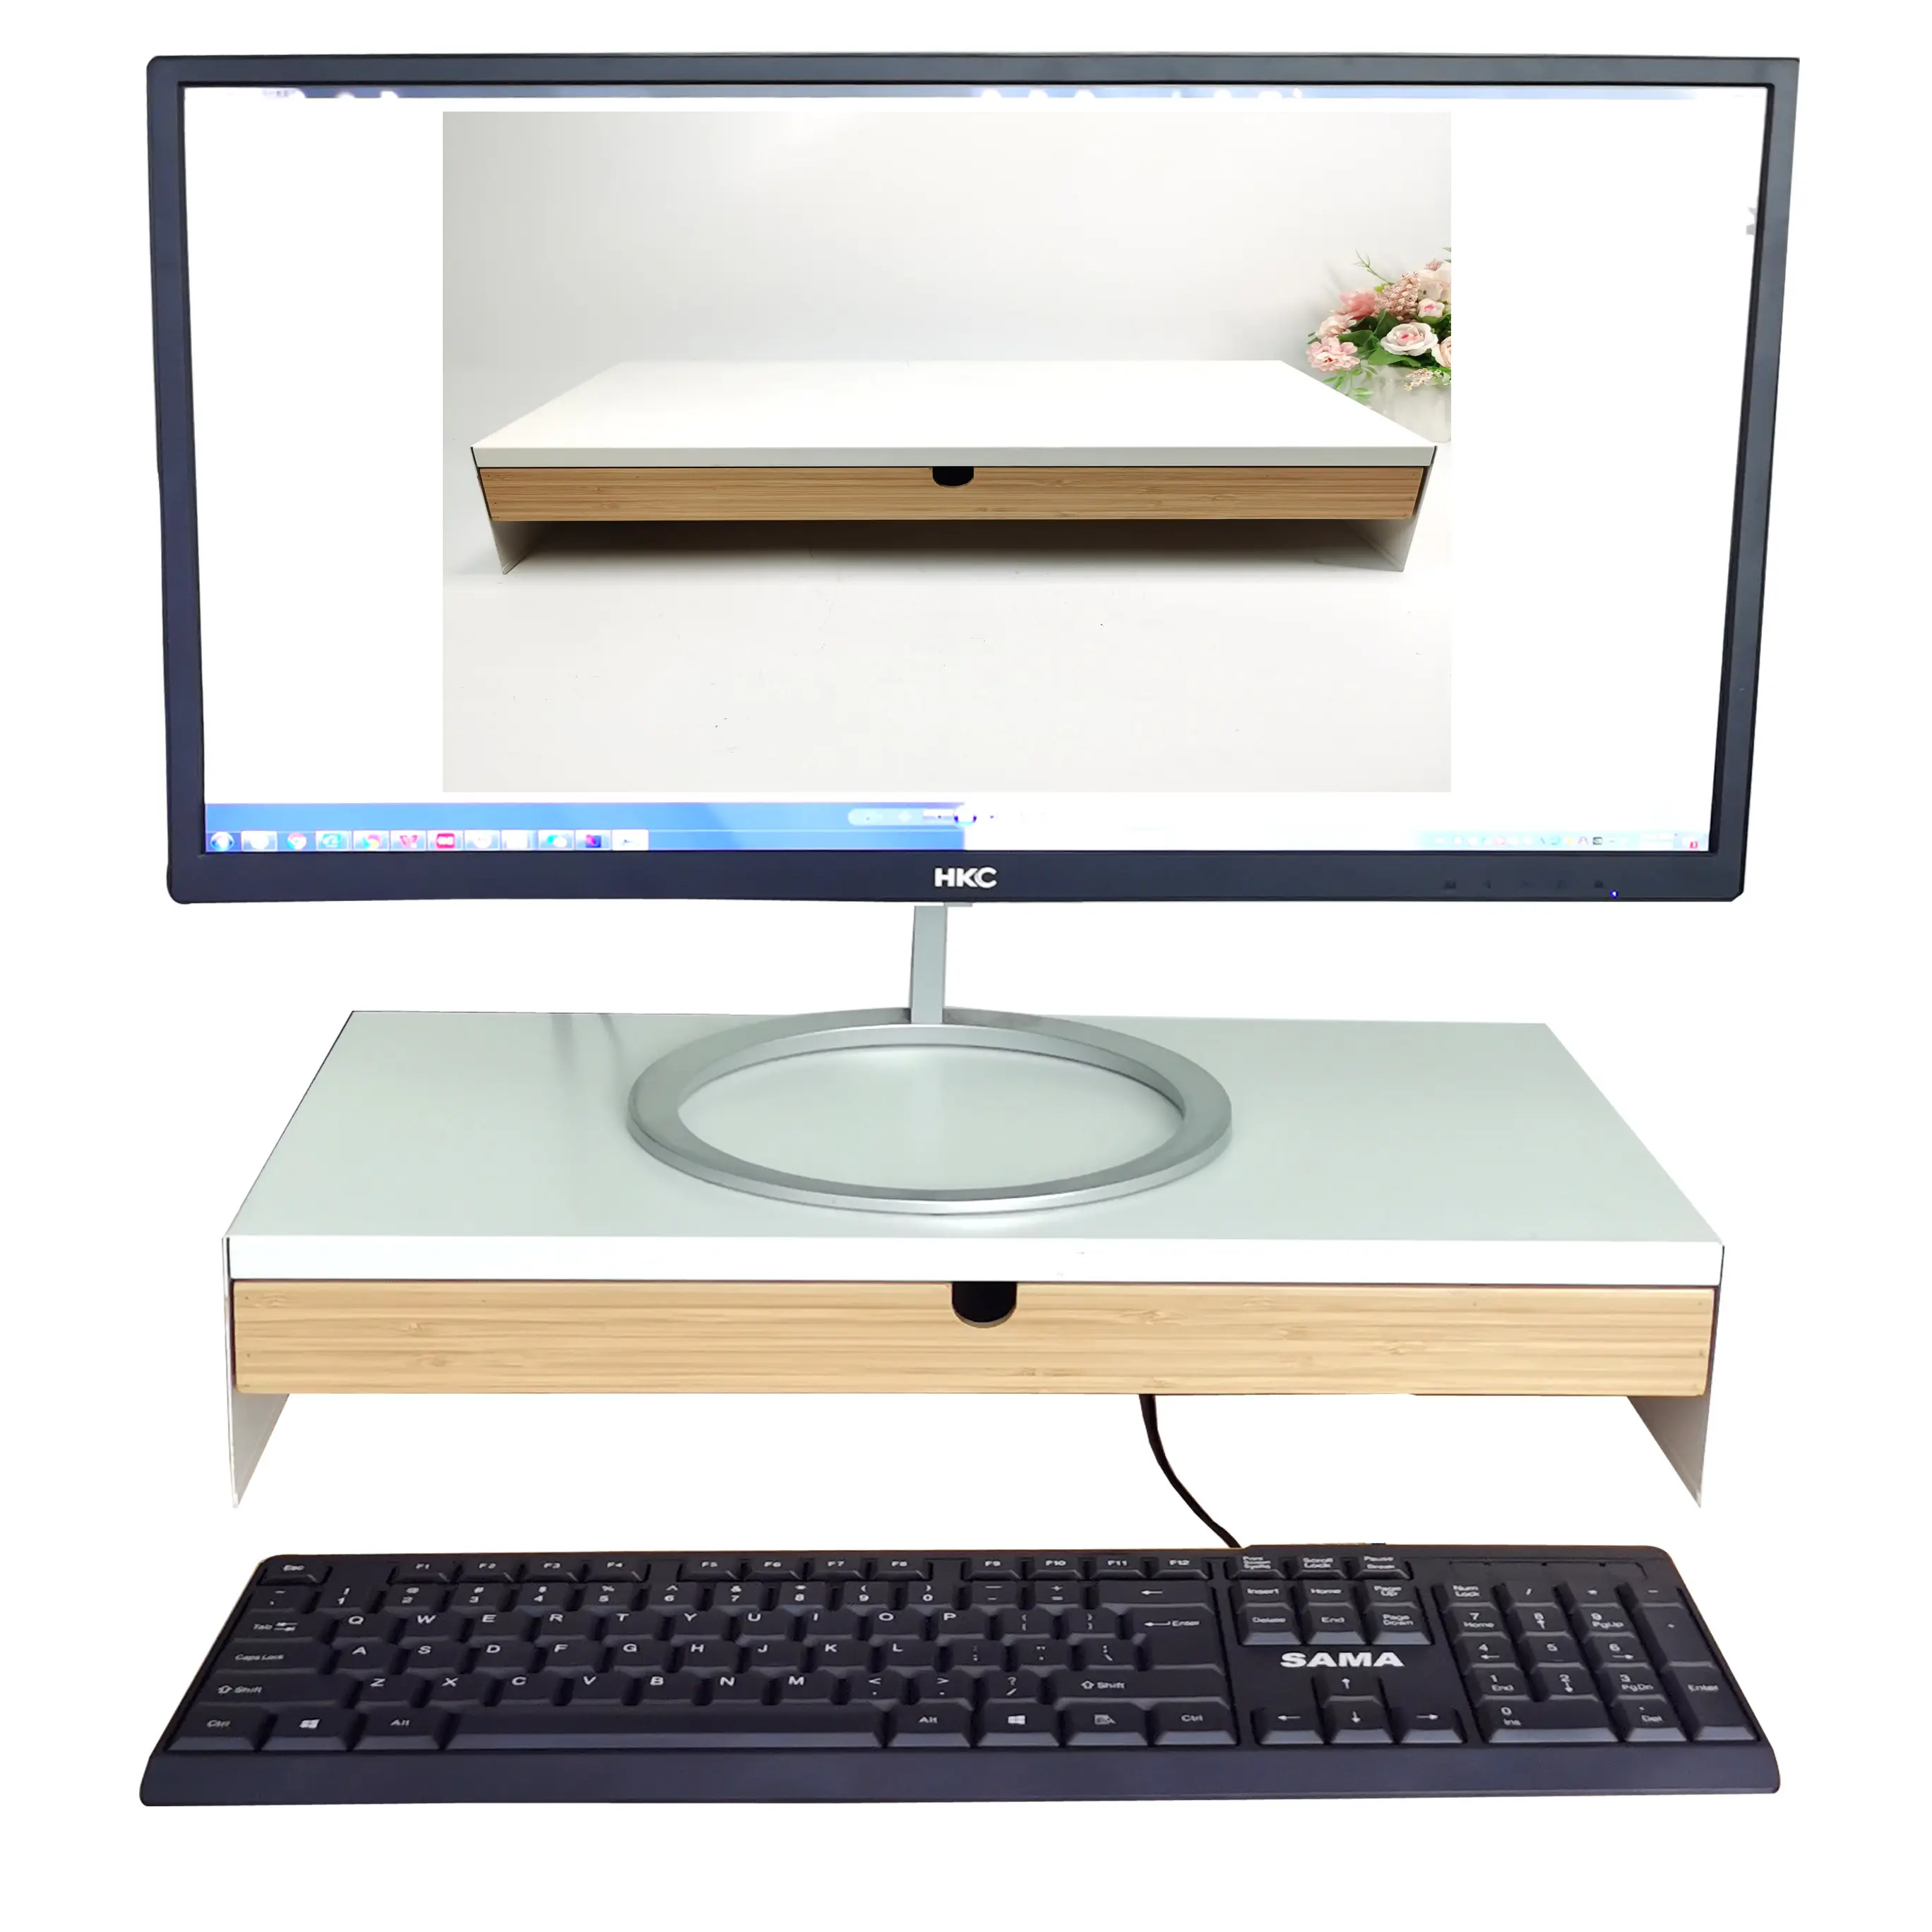 Suporte de mesa para computador, suporte multifuncional de bambu sólido para monitor de mesa com acessórios ajustáveis de armazenamento